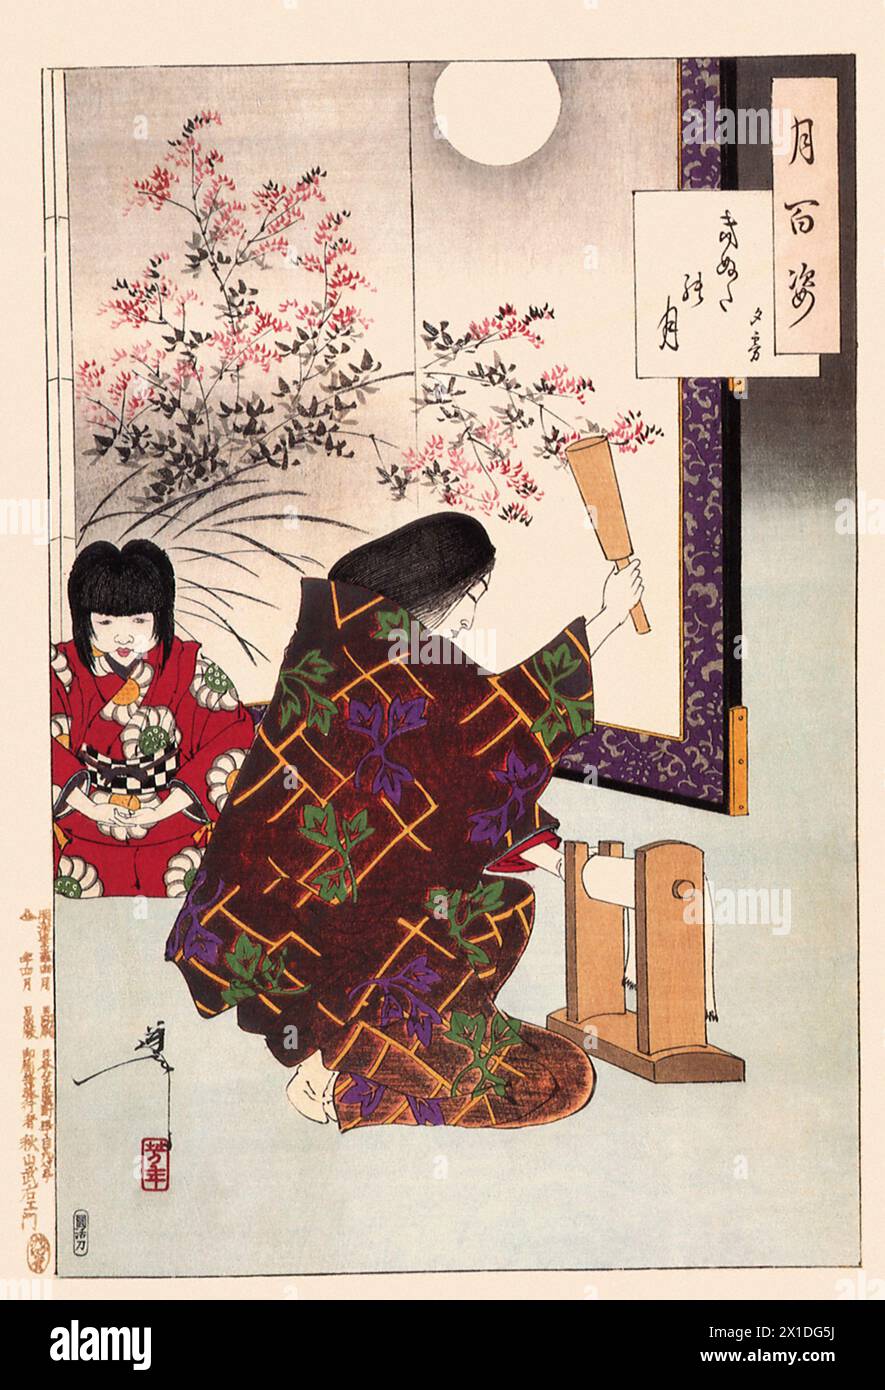 Tsukioka Yoshitoshi (1839 bis 9. Juni 1892) einer der letzten großen Meister des klassischen japanischen Farbholzschnitt, hier das Werk  Cloth-beating Moon - Yugiri Stock Photo